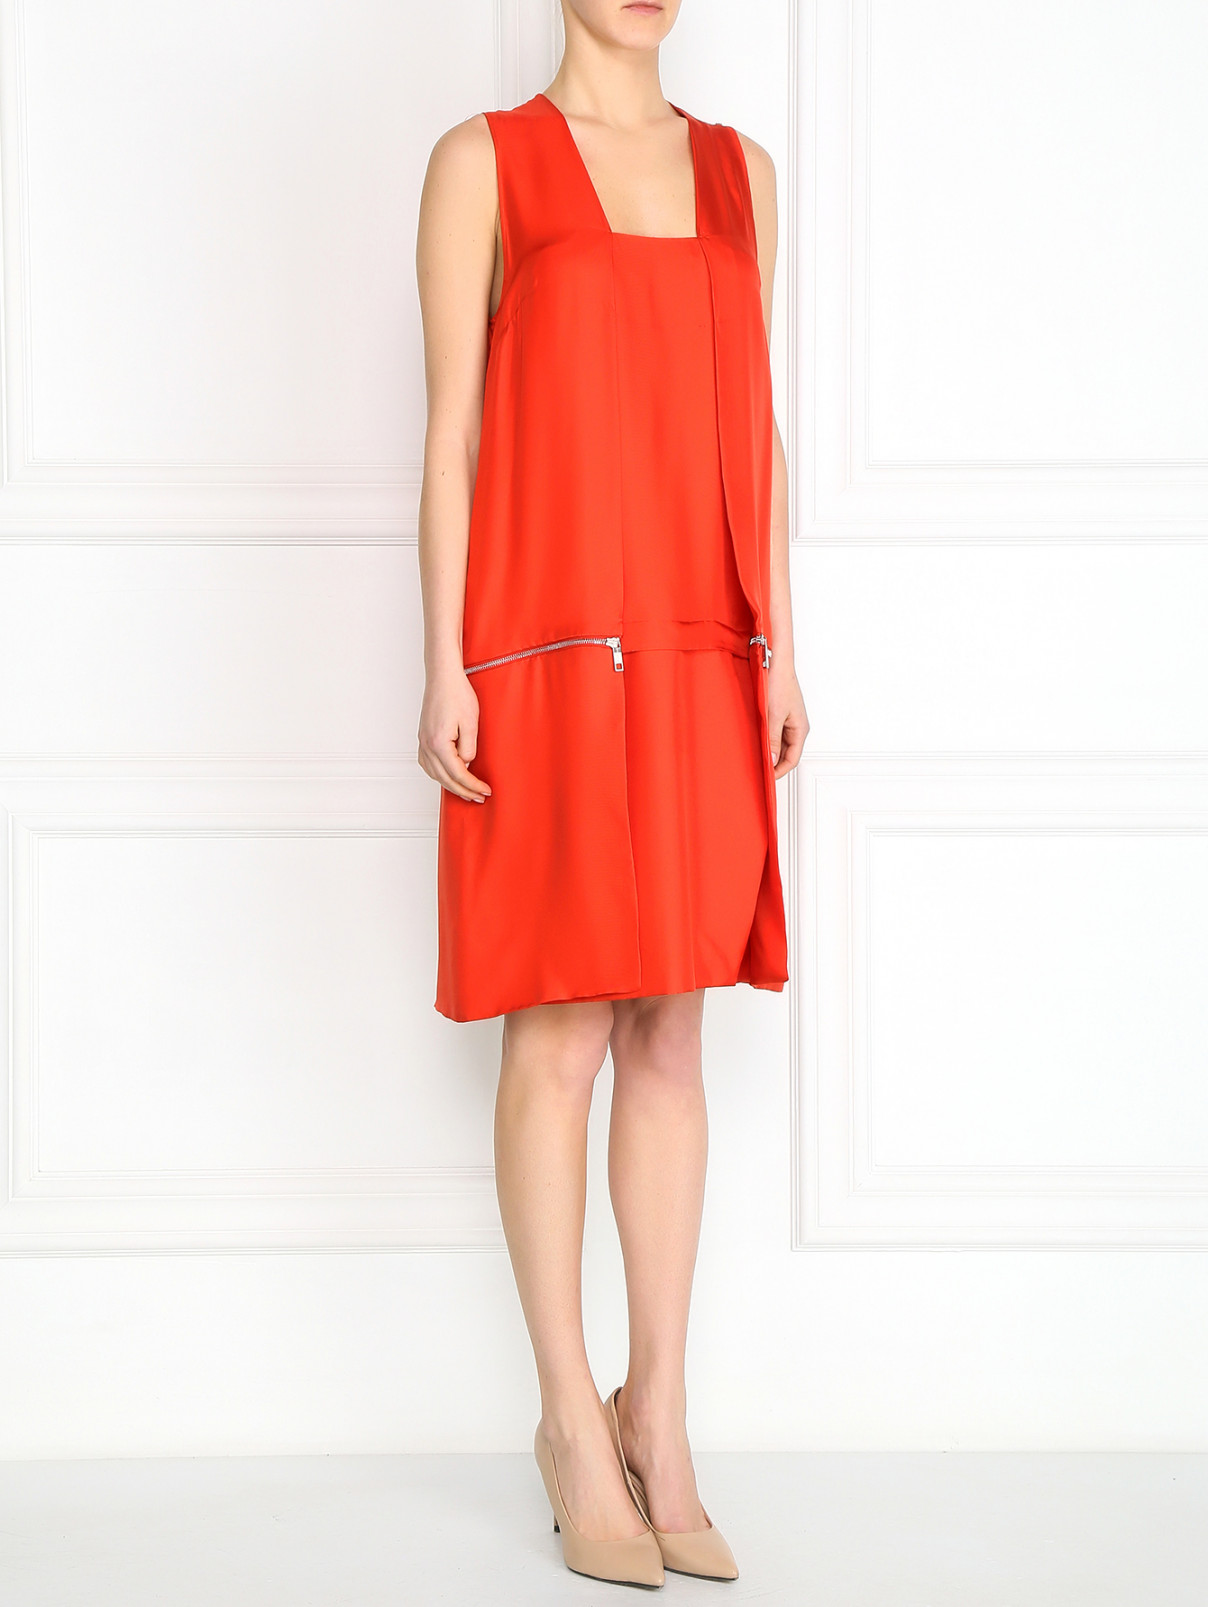 Платье из шелка с запахом Sportmax  –  Модель Общий вид  – Цвет:  Красный